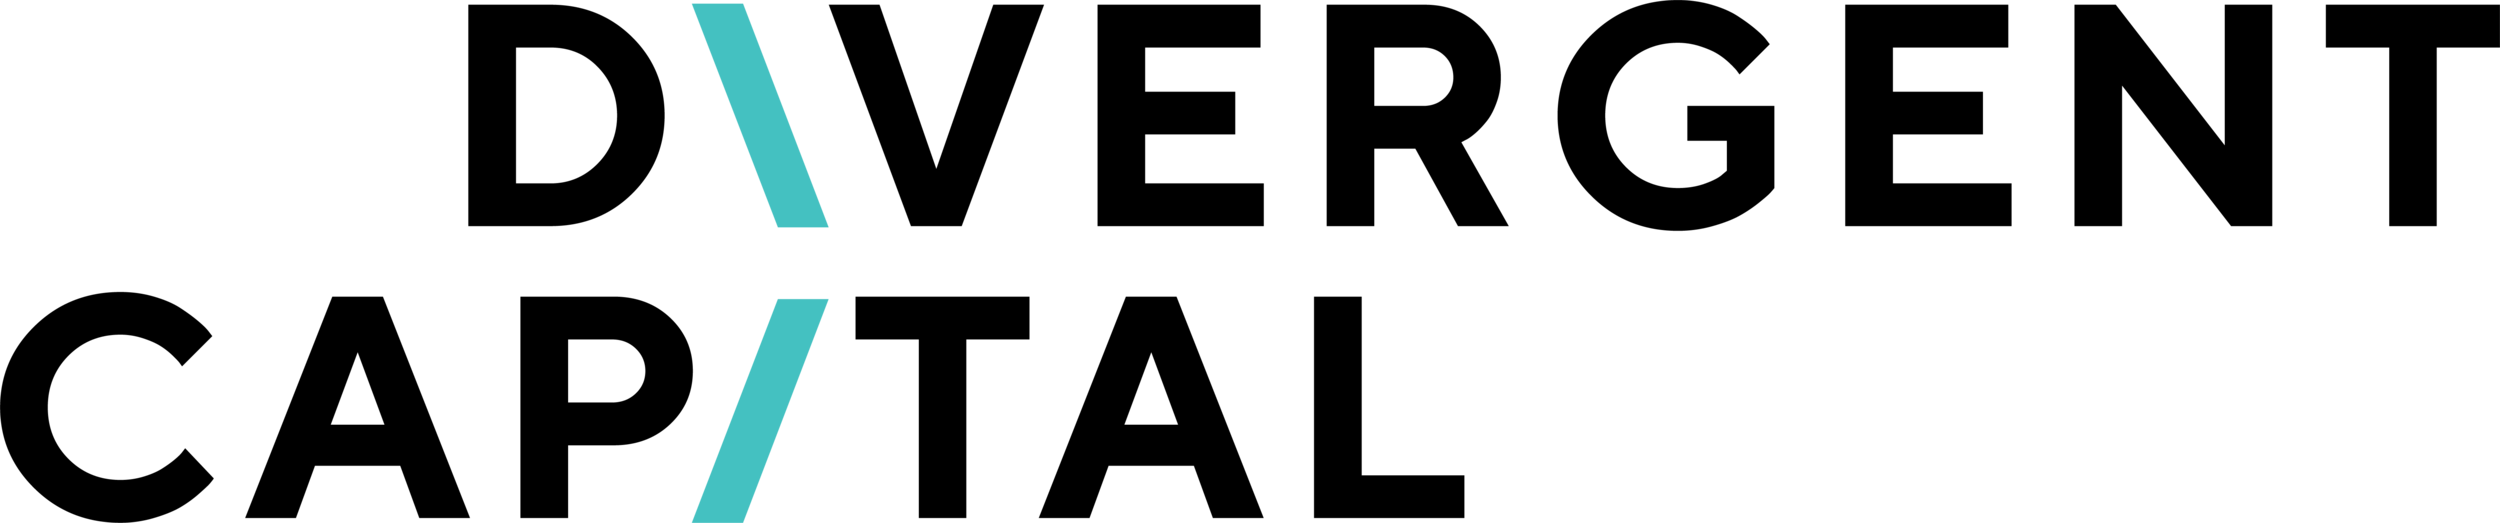 Divergent Capital Logo.png